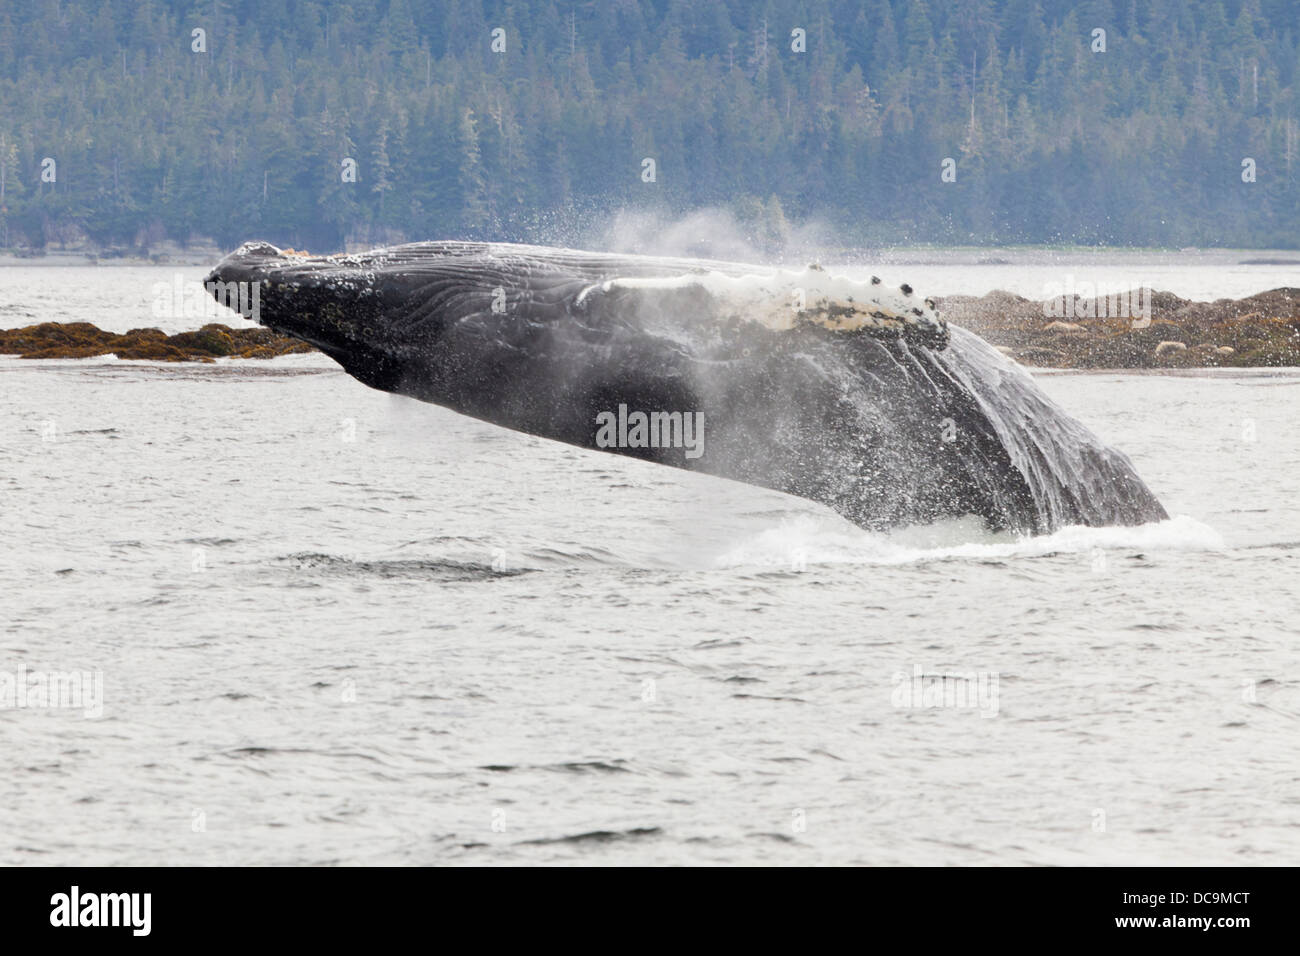 Stati Uniti d'America, Alaska, Federico Suono. Humpback Whale cadere in acqua dopo il busto. Foto Stock